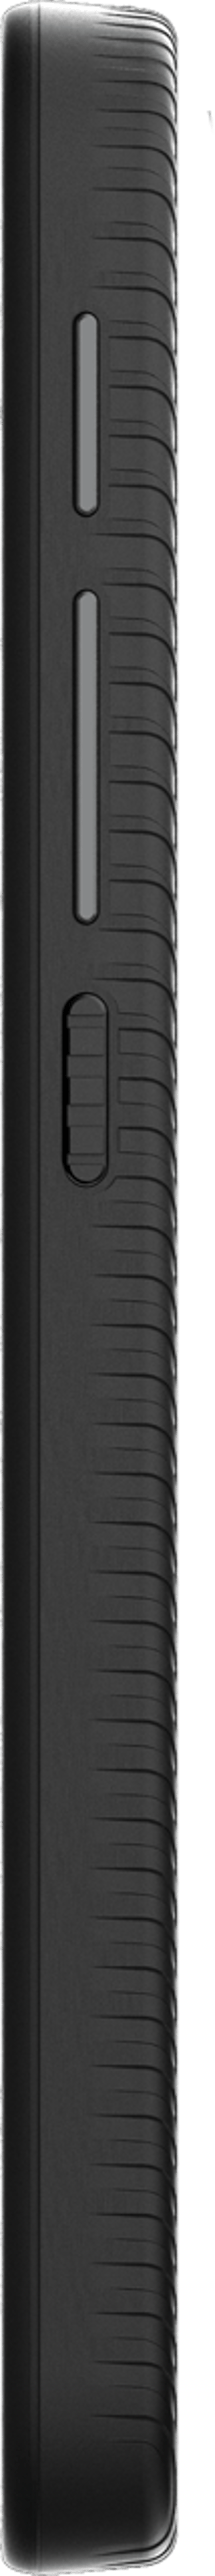 Motorola DEFY 64GB Dobbelt-SIM Svart